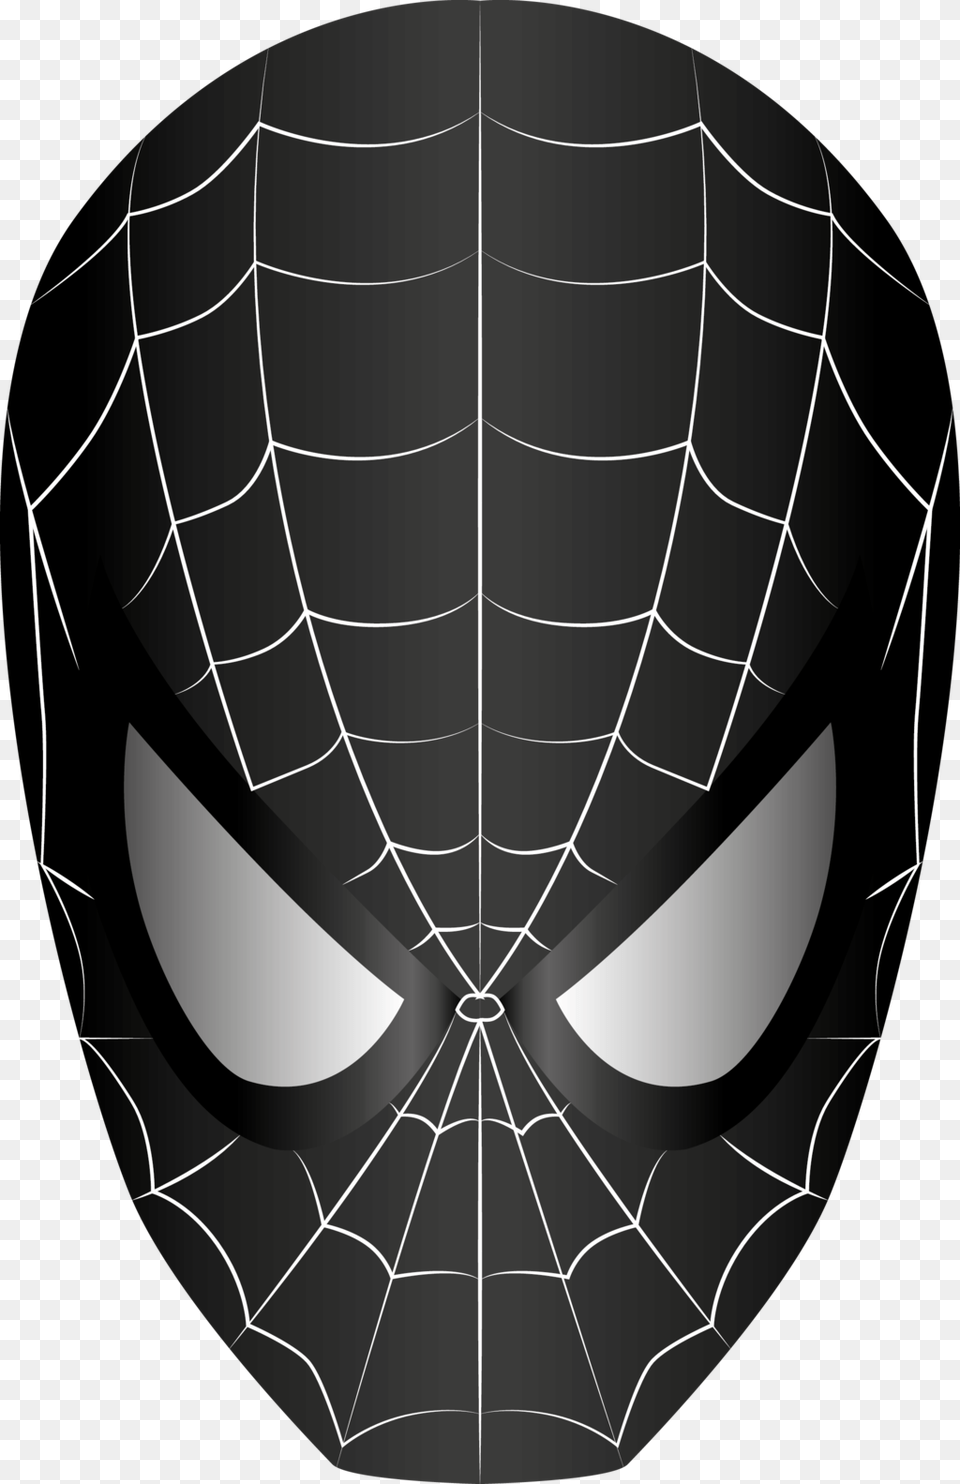 Black Spiderman Mask Clipart Spider Man Black Mask, Spider Web Free Transparent Png